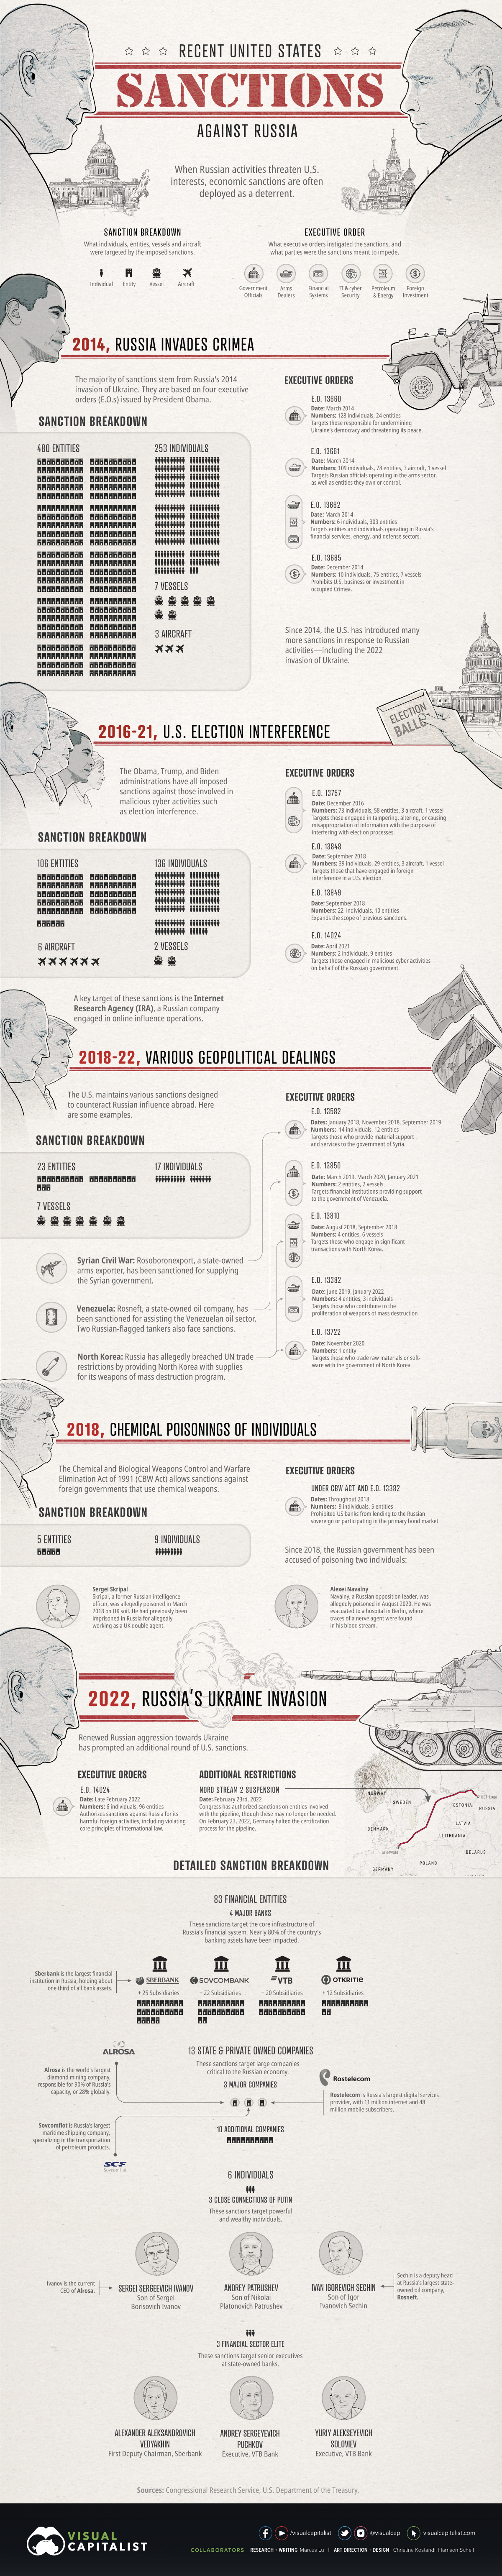 信息图表列出美国对俄罗斯的制裁